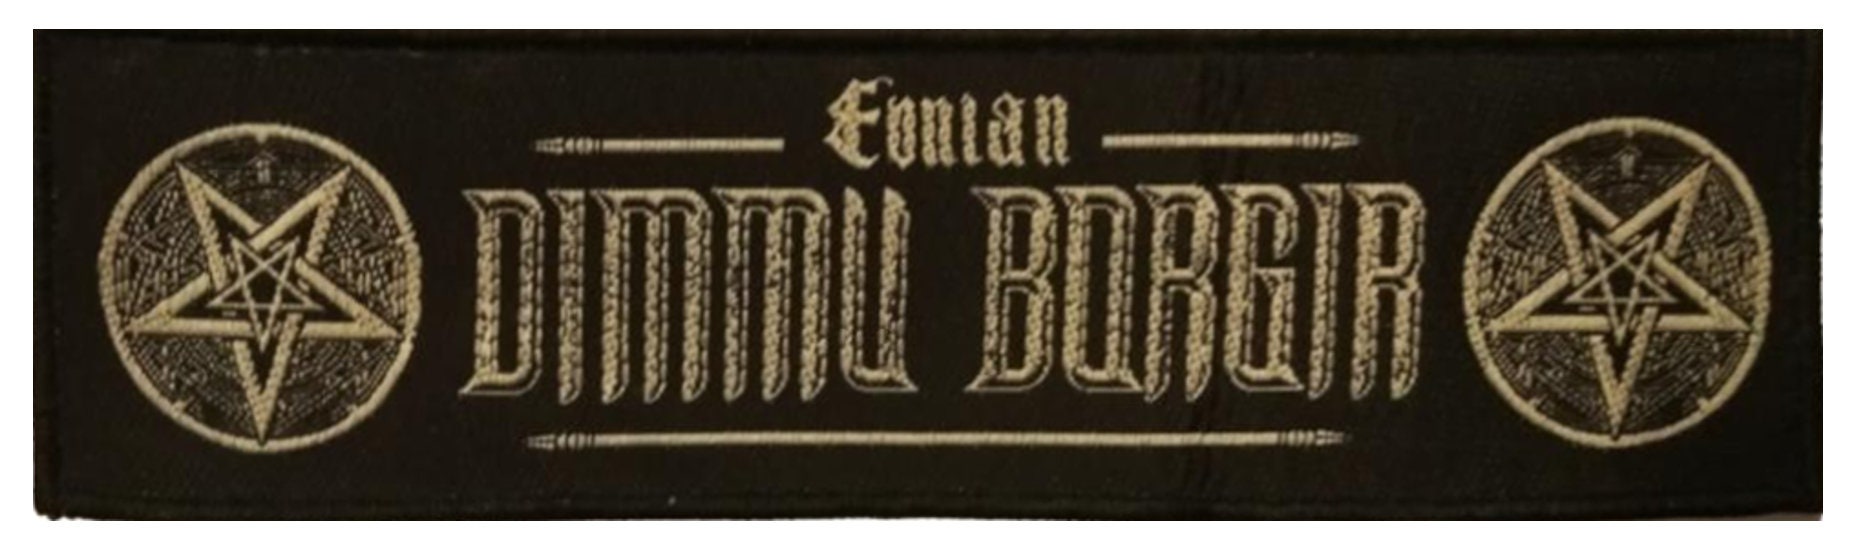 Eonian - Dimmu Borgir